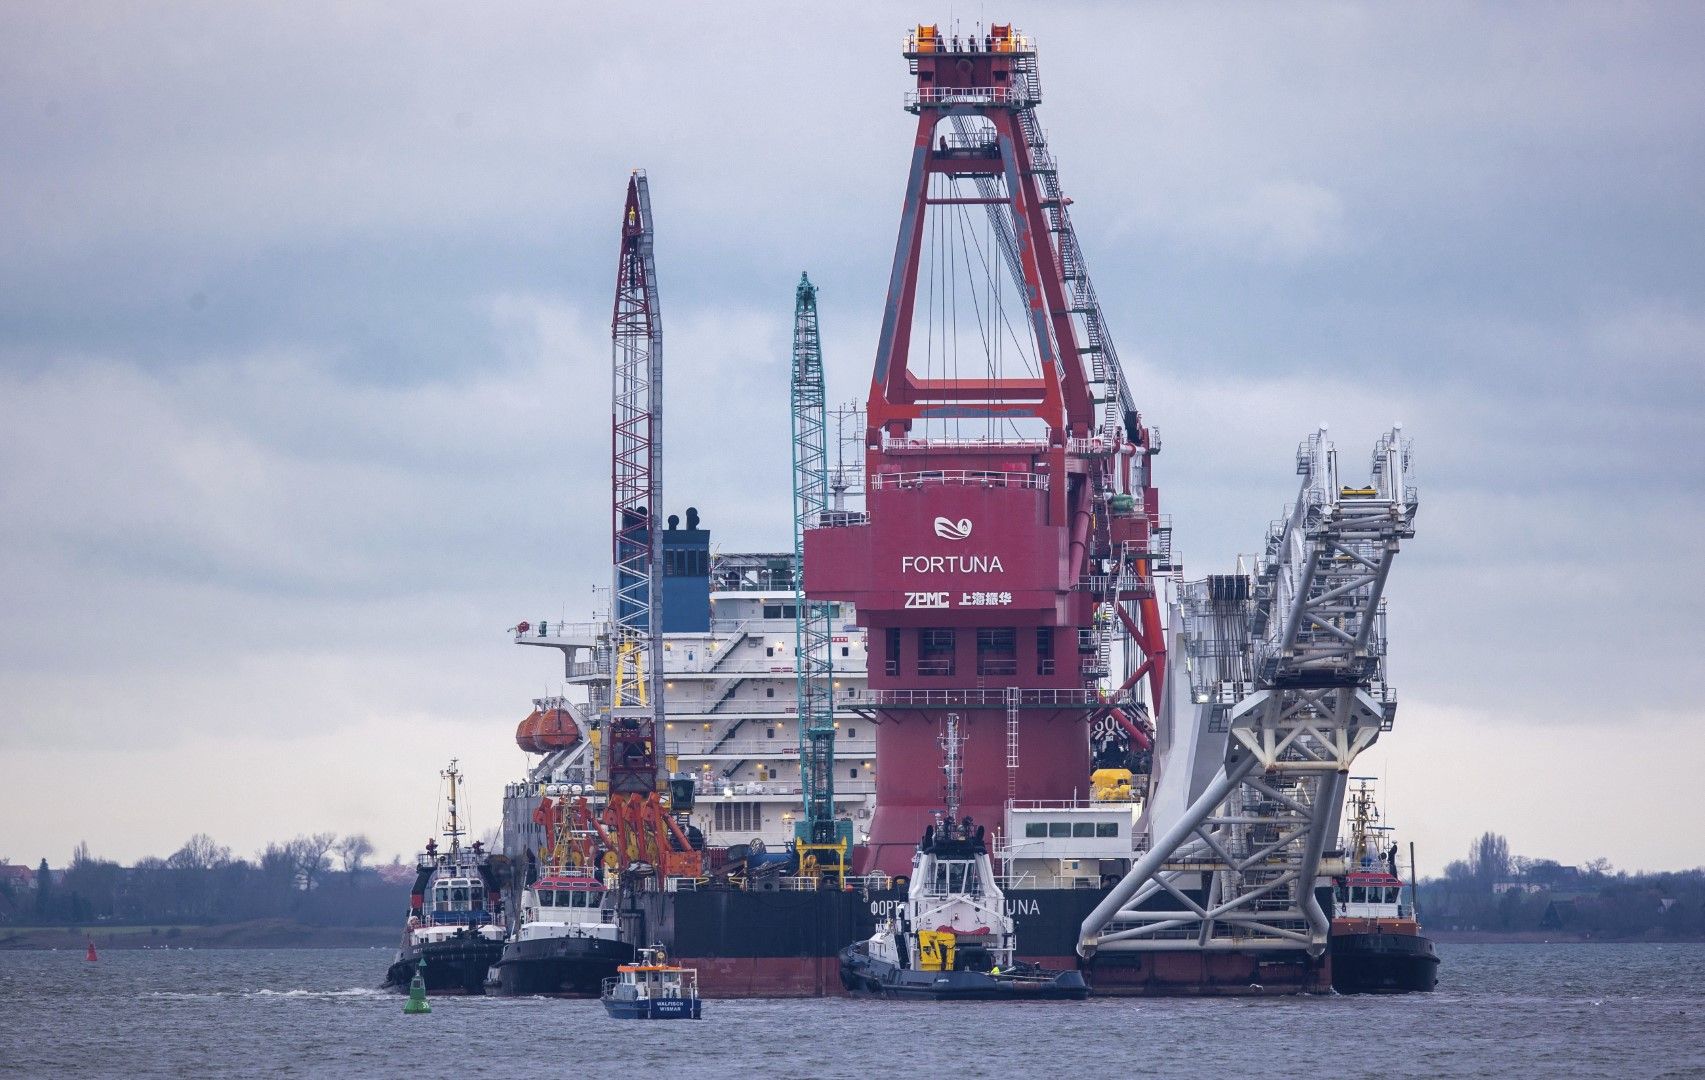 "Северен поток 2" - руският кораб за полагане на тръби Фортуна, акостиран на пристанище Визмар, Германия, на брега на Балтийско море, 14 януари. Фирмата собственик на кораба вече беше подложена на санкционния механизъм